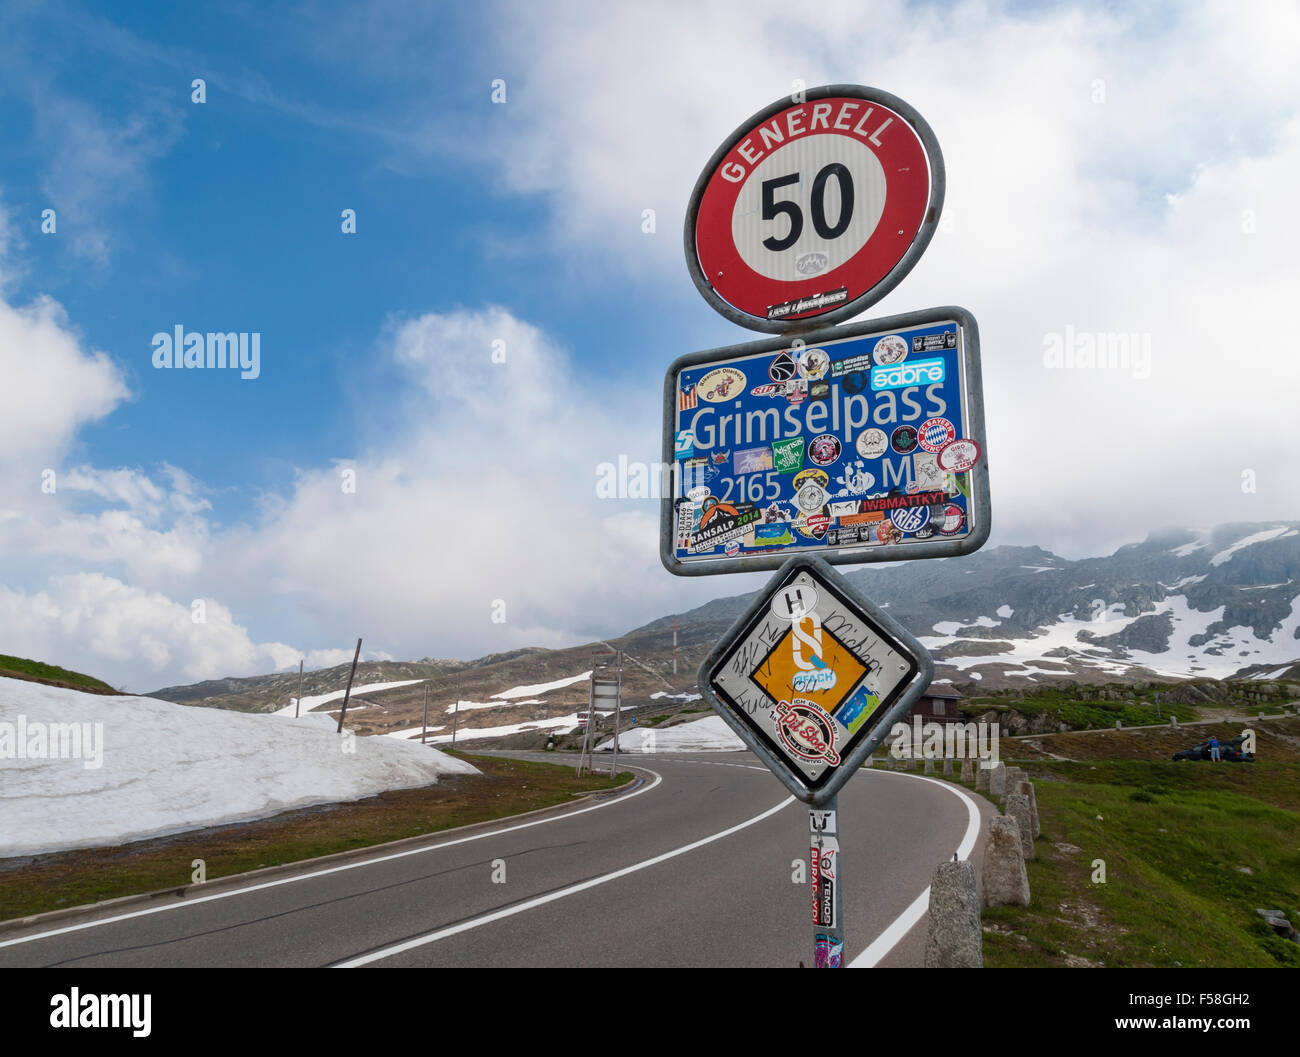 Strada segno sulla sommità del Grimsel Swiss mountain pass road (altitudine 2165m), incollati con adesivi di bypassare i turisti. Foto Stock